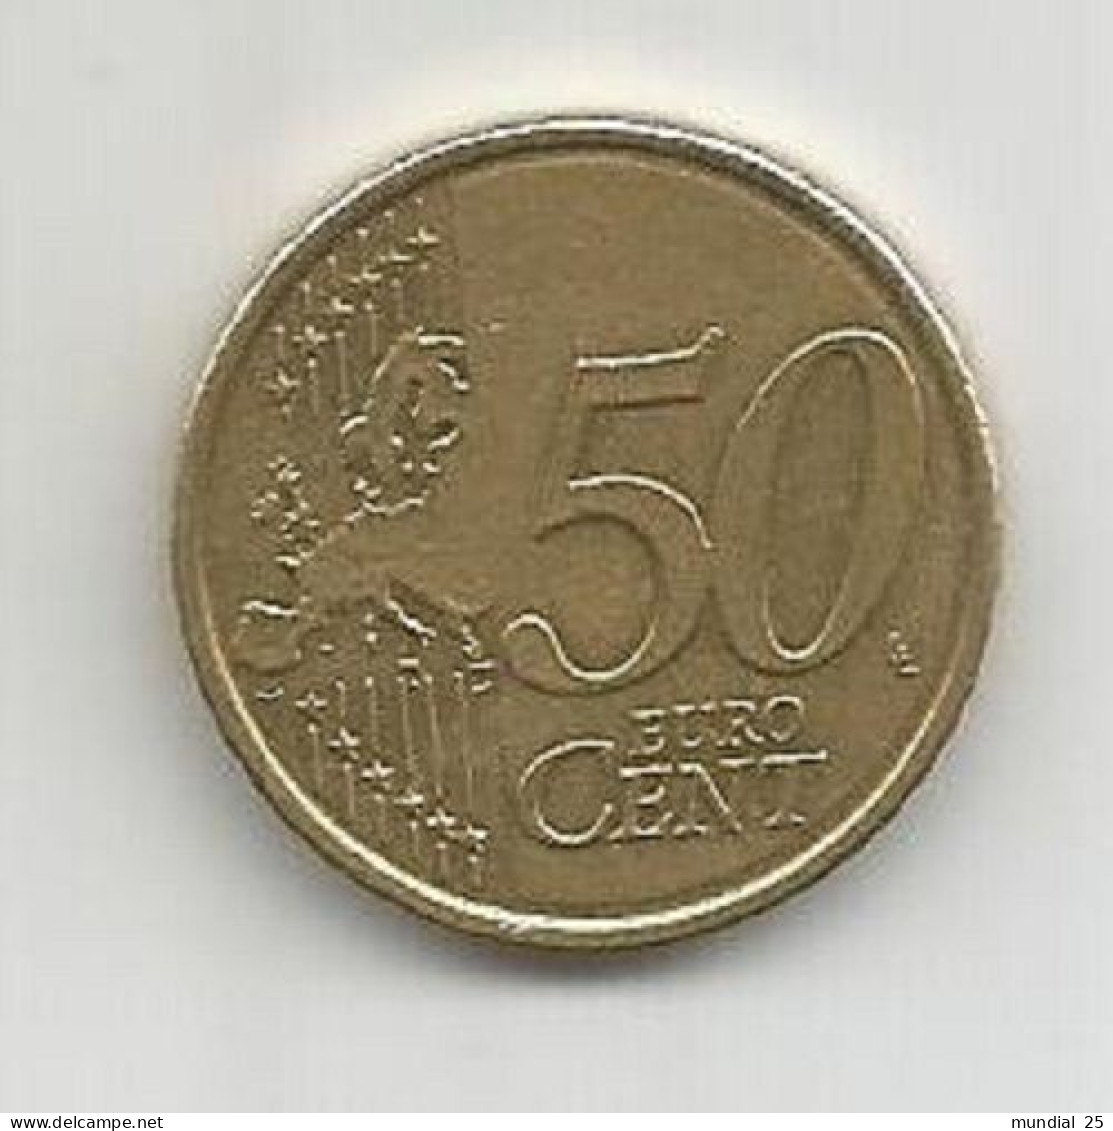 BELGIUM 50 EURO CENT 2012 - Belgique